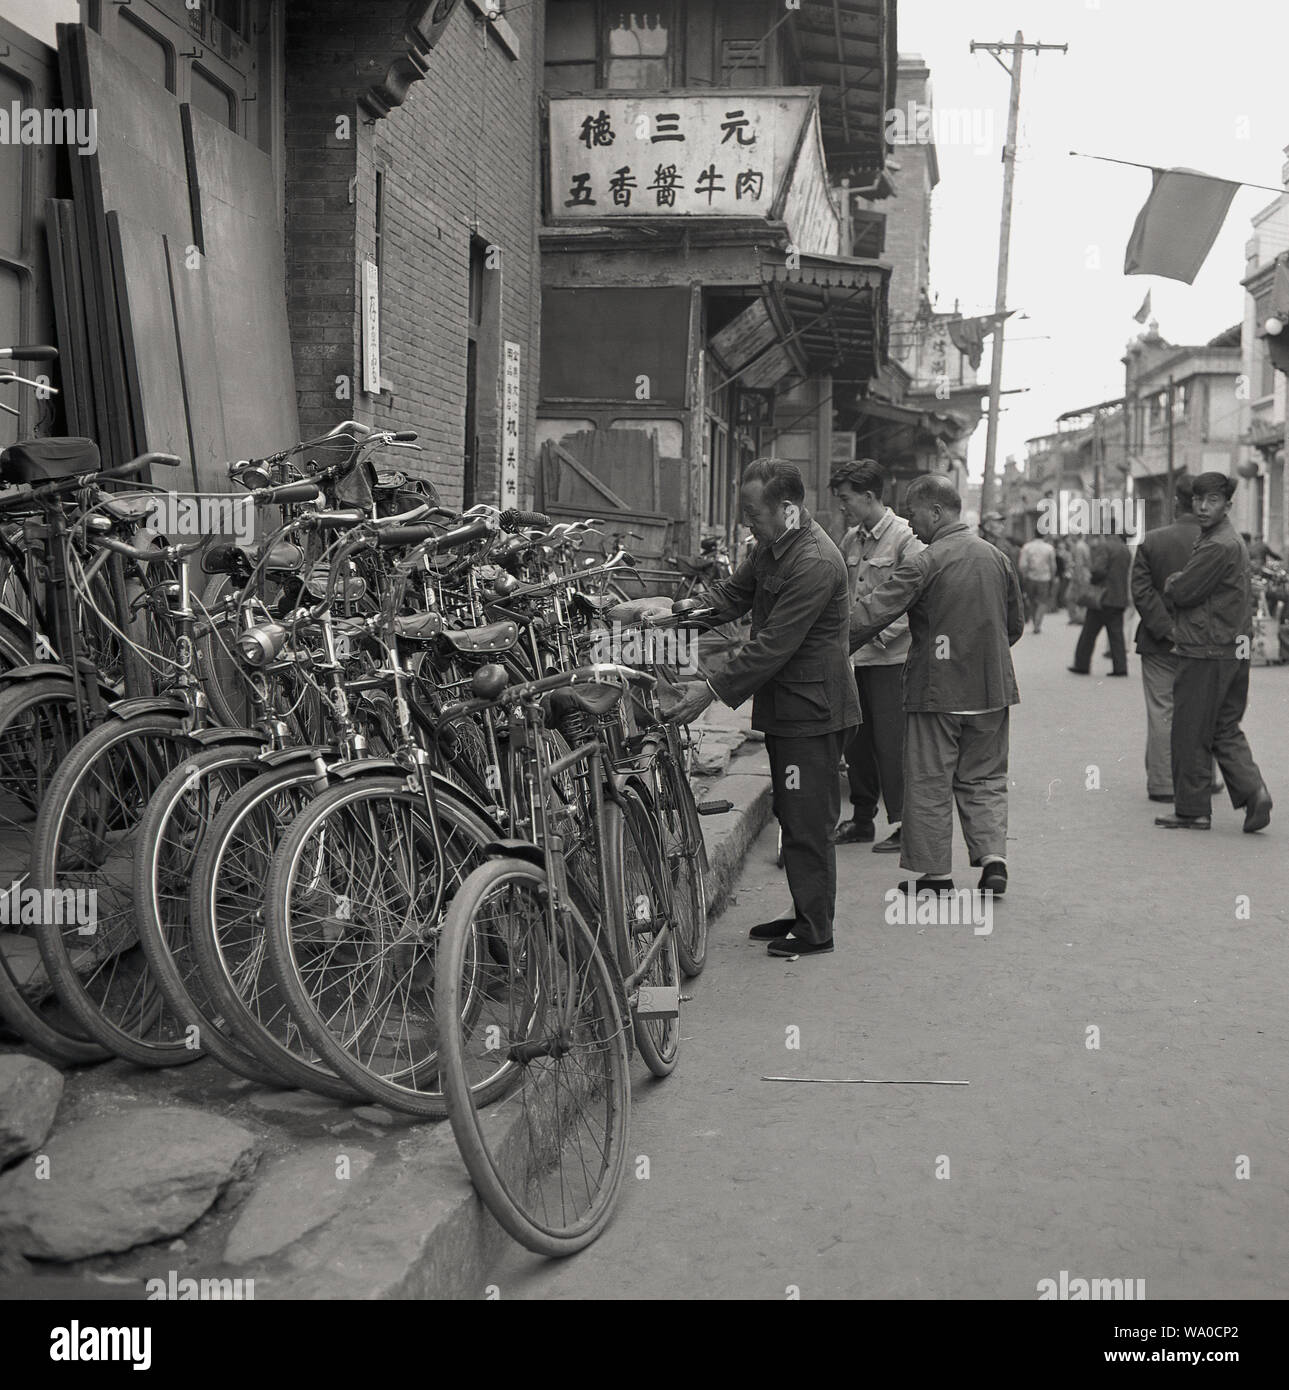 1950 s, historischen, lokalen chinesischen Männer mit ihren Fahrrädern Nebeneinander außerhalb eines Gebäudes in einer Straße in Peking, China, gestapelt. Bekannt als das Königreich von Fahrrädern" - von der Kommunistischen Partei gefördert als kostengünstige Lösung für die öffentlichen Verkehrsmittel - es in dieser Ära war, dass Fahrrad wurde das wichtigste Transportmittel für die meisten städtischen Chinesisch, vorlagentyps, der die Fahrradrikscha (Cycle rickshaw) der 1940er Jahre und die Hand gezogenen Rikscha der 1920er und 30er Jahre. Stockfoto